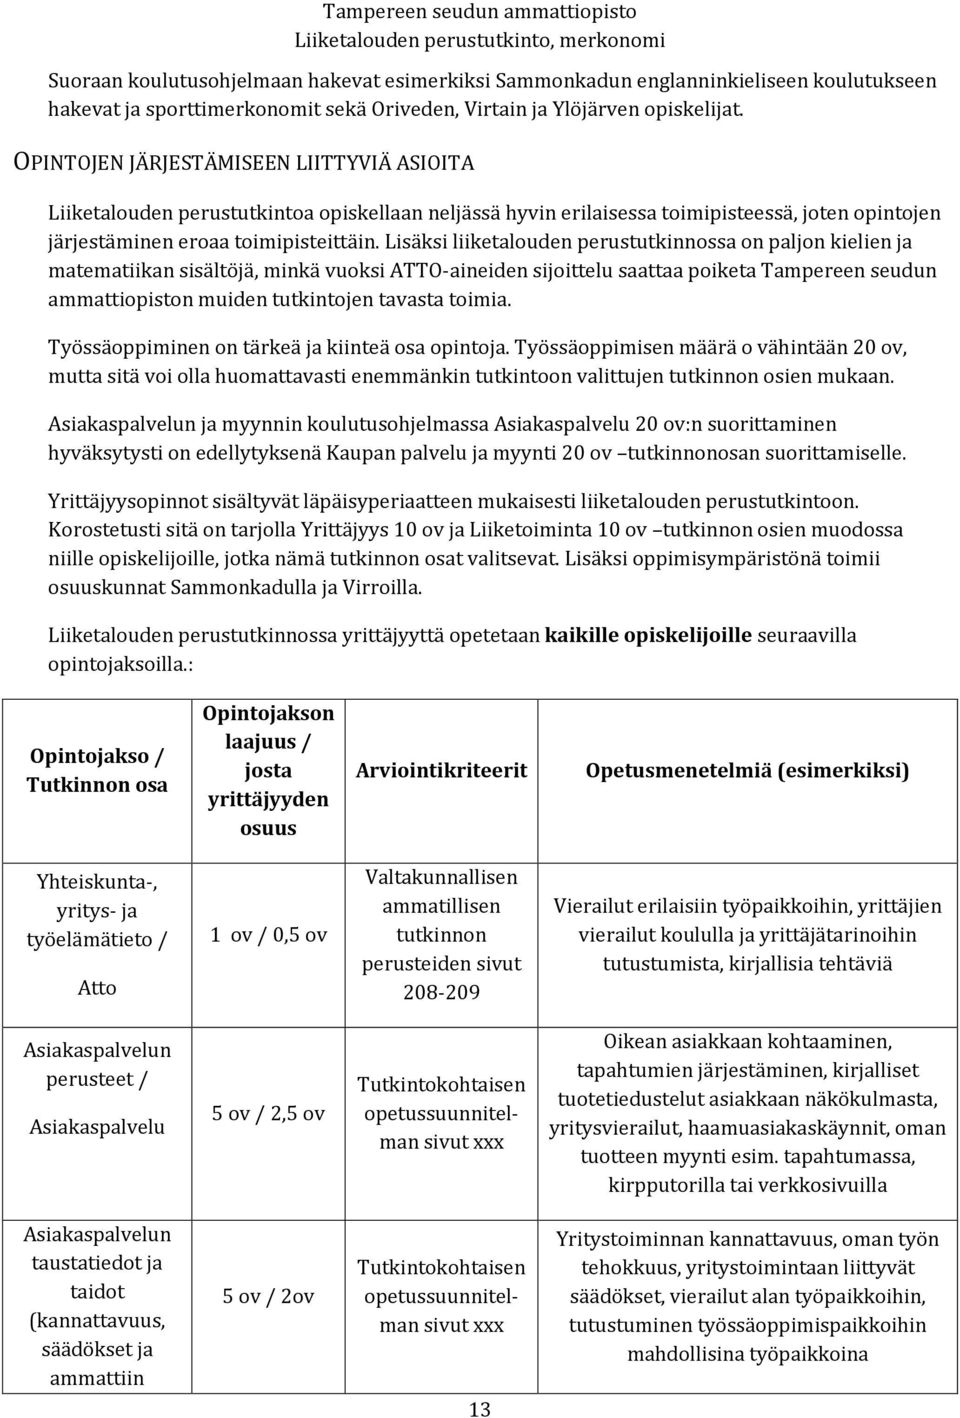 Lisäksi liiketalouden perustutkinnossa on paljon kielien ja matematiikan sisältöjä, minkä vuoksi ATTO-aineiden sijoittelu saattaa poiketa Tampereen seudun ammattiopiston muiden tutkintojen tavasta